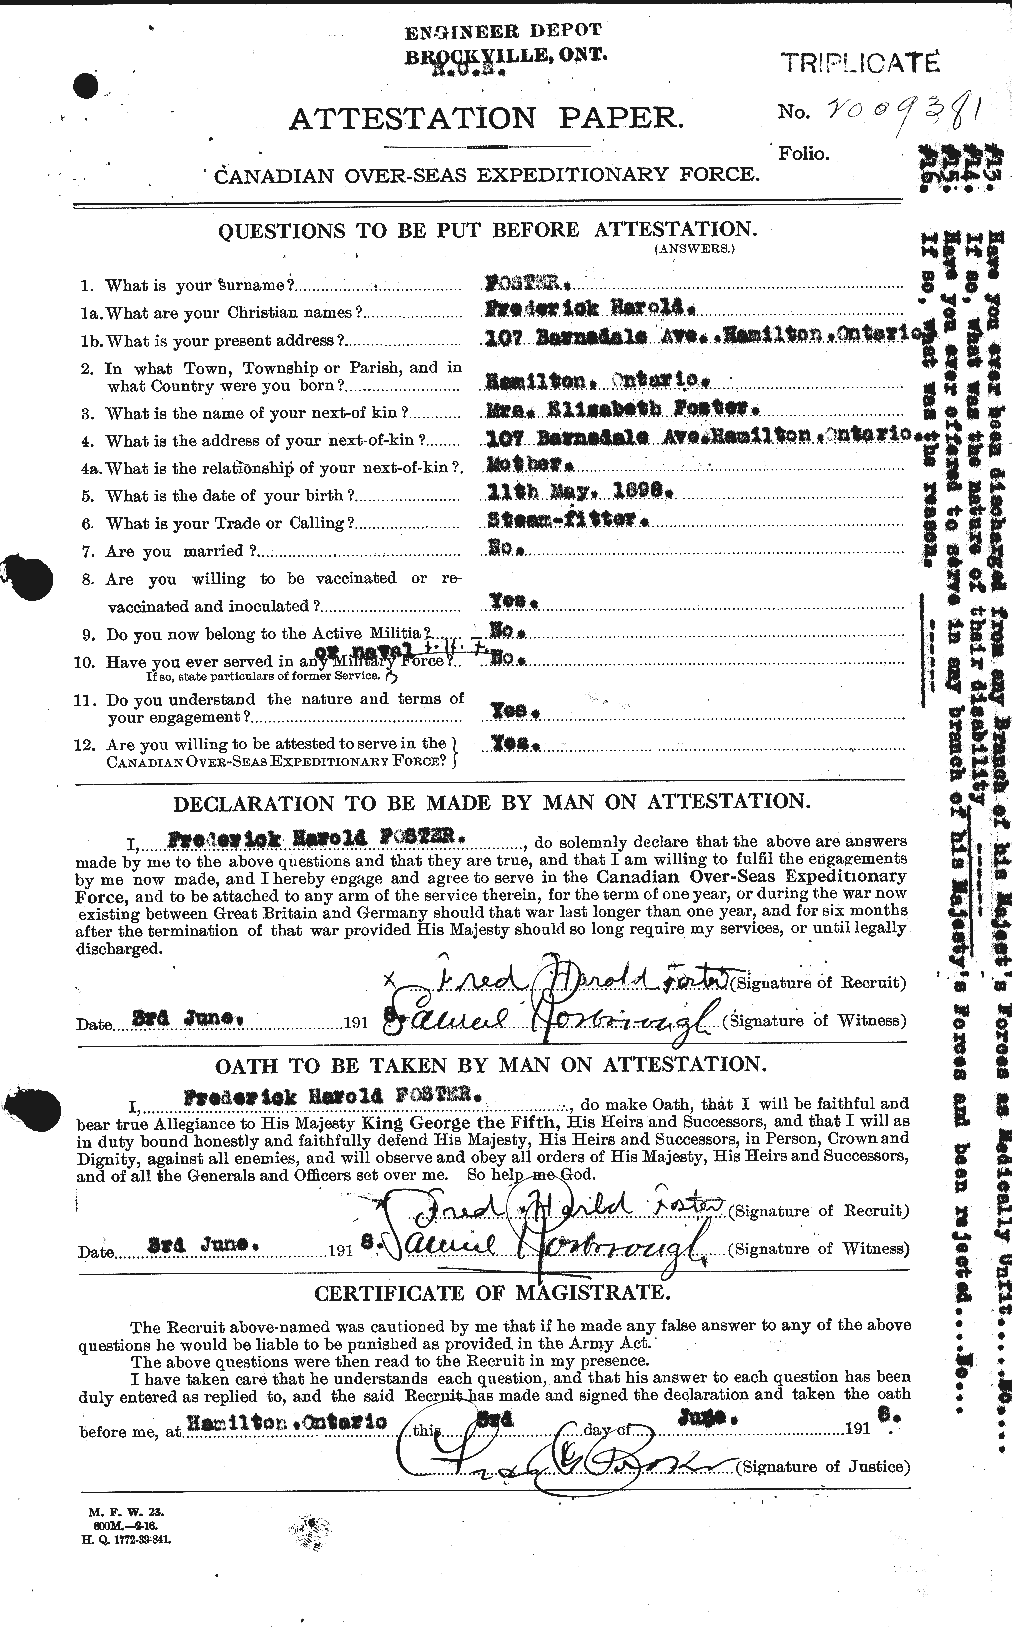 Dossiers du Personnel de la Première Guerre mondiale - CEC 330651a